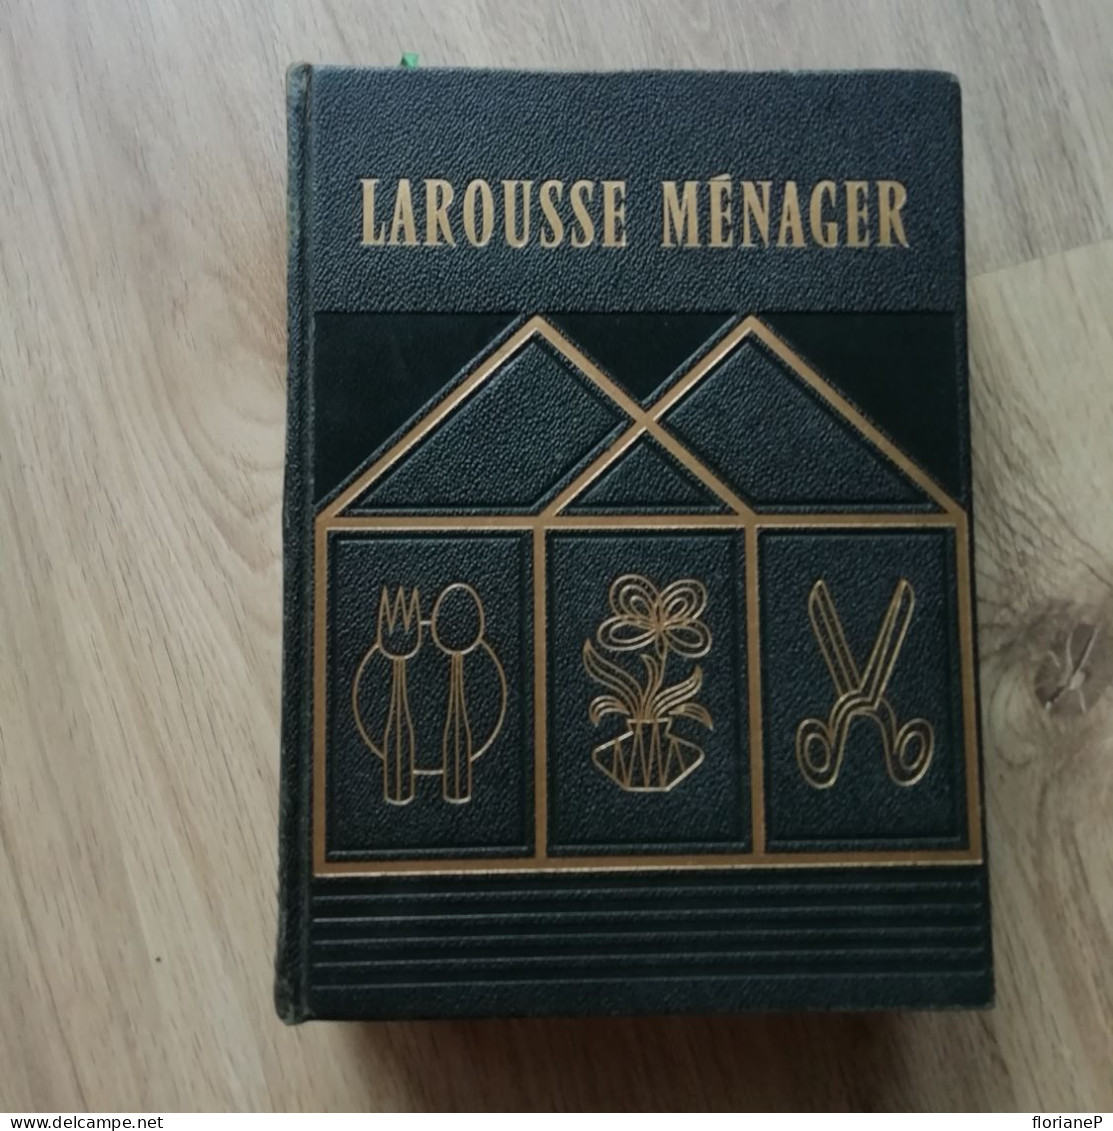 Larousse Menager - Encyclopédies